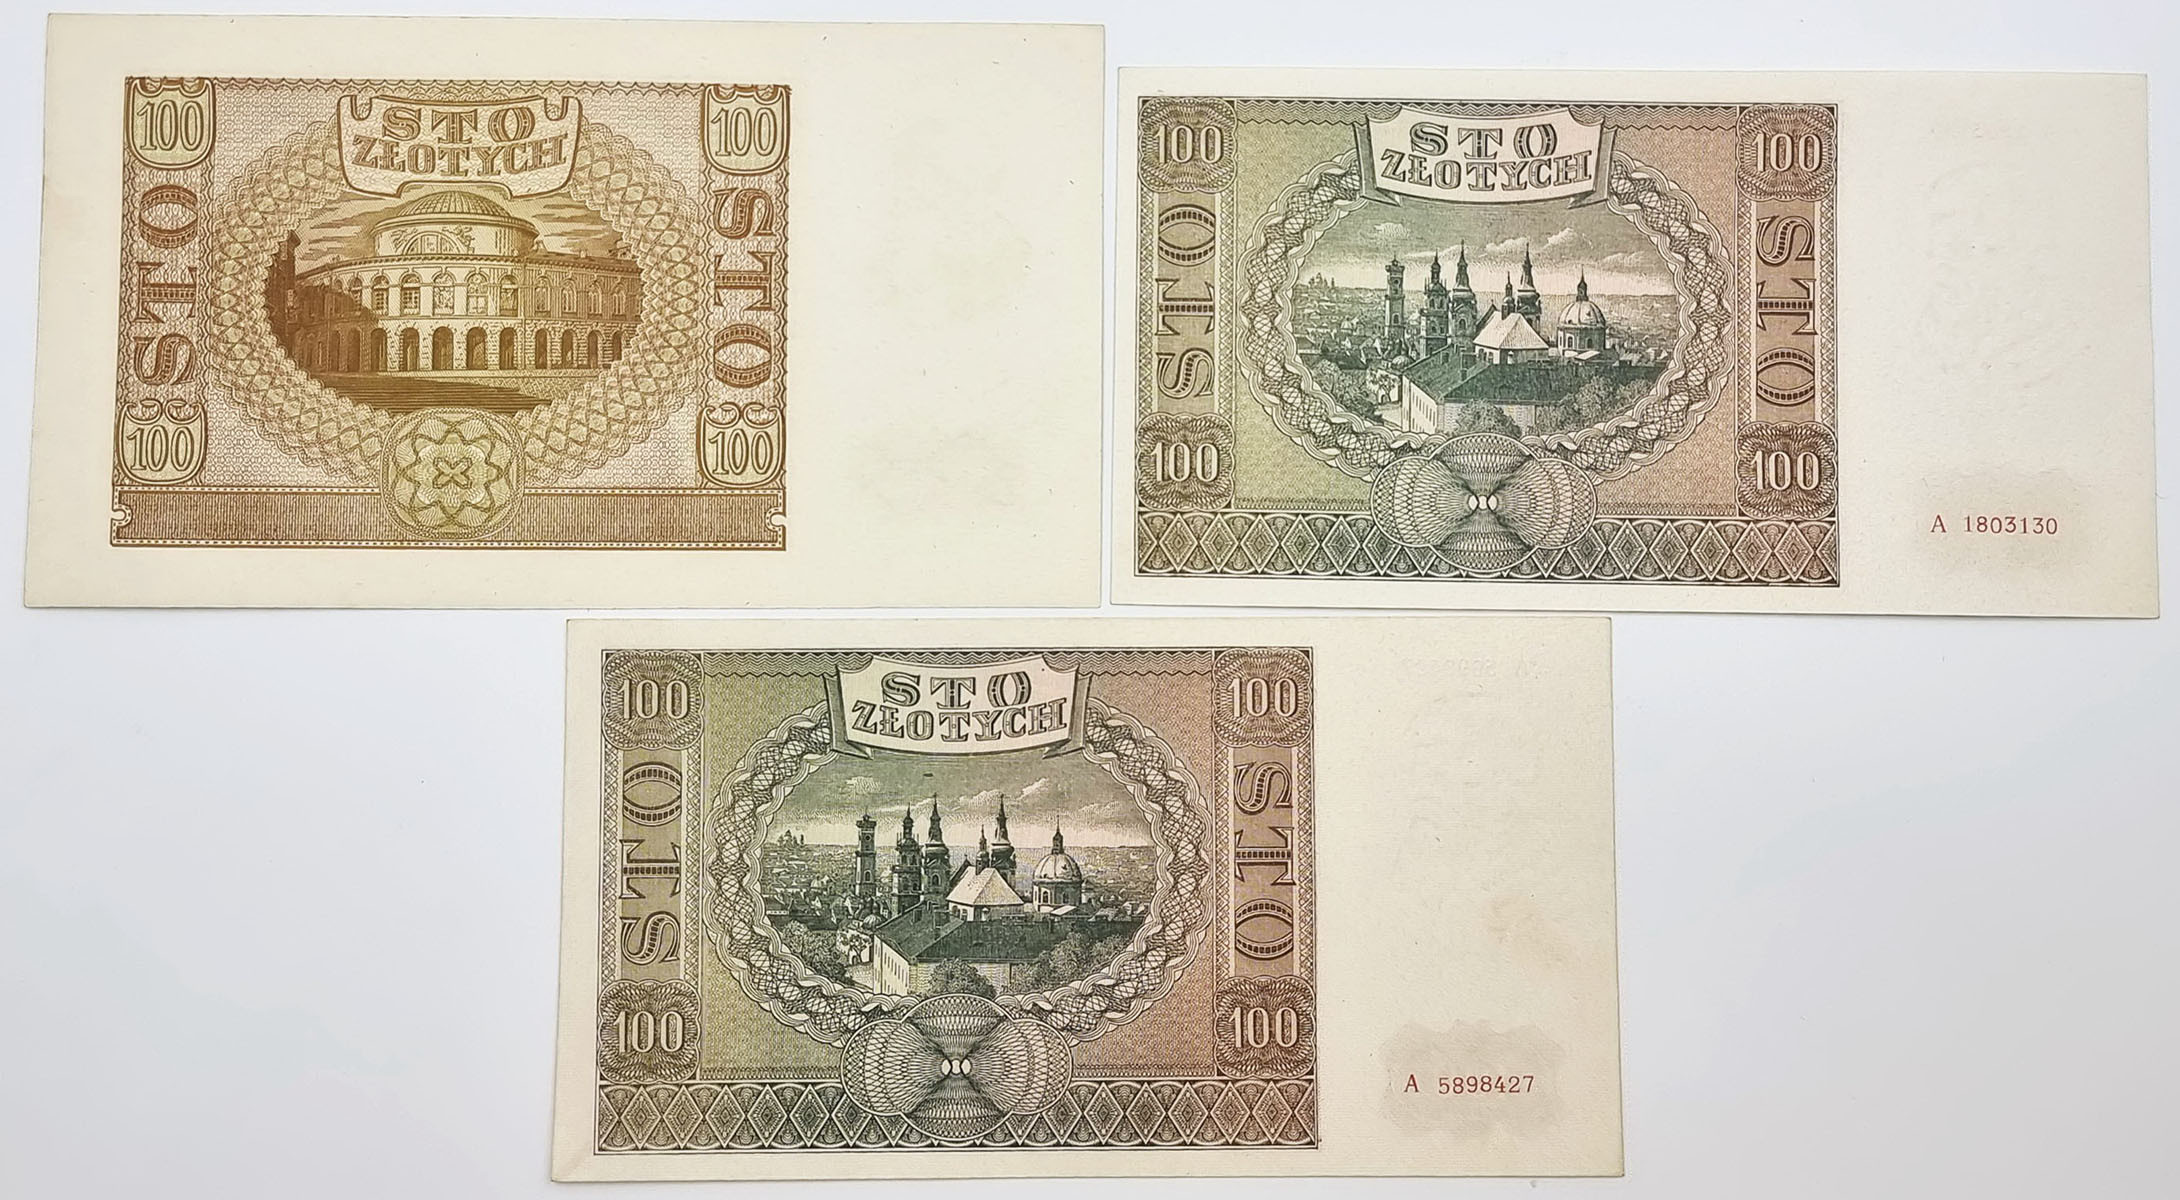 100 złotych 1940 seria E, 100 złotych 1941 seria A, zestaw 3 sztuk